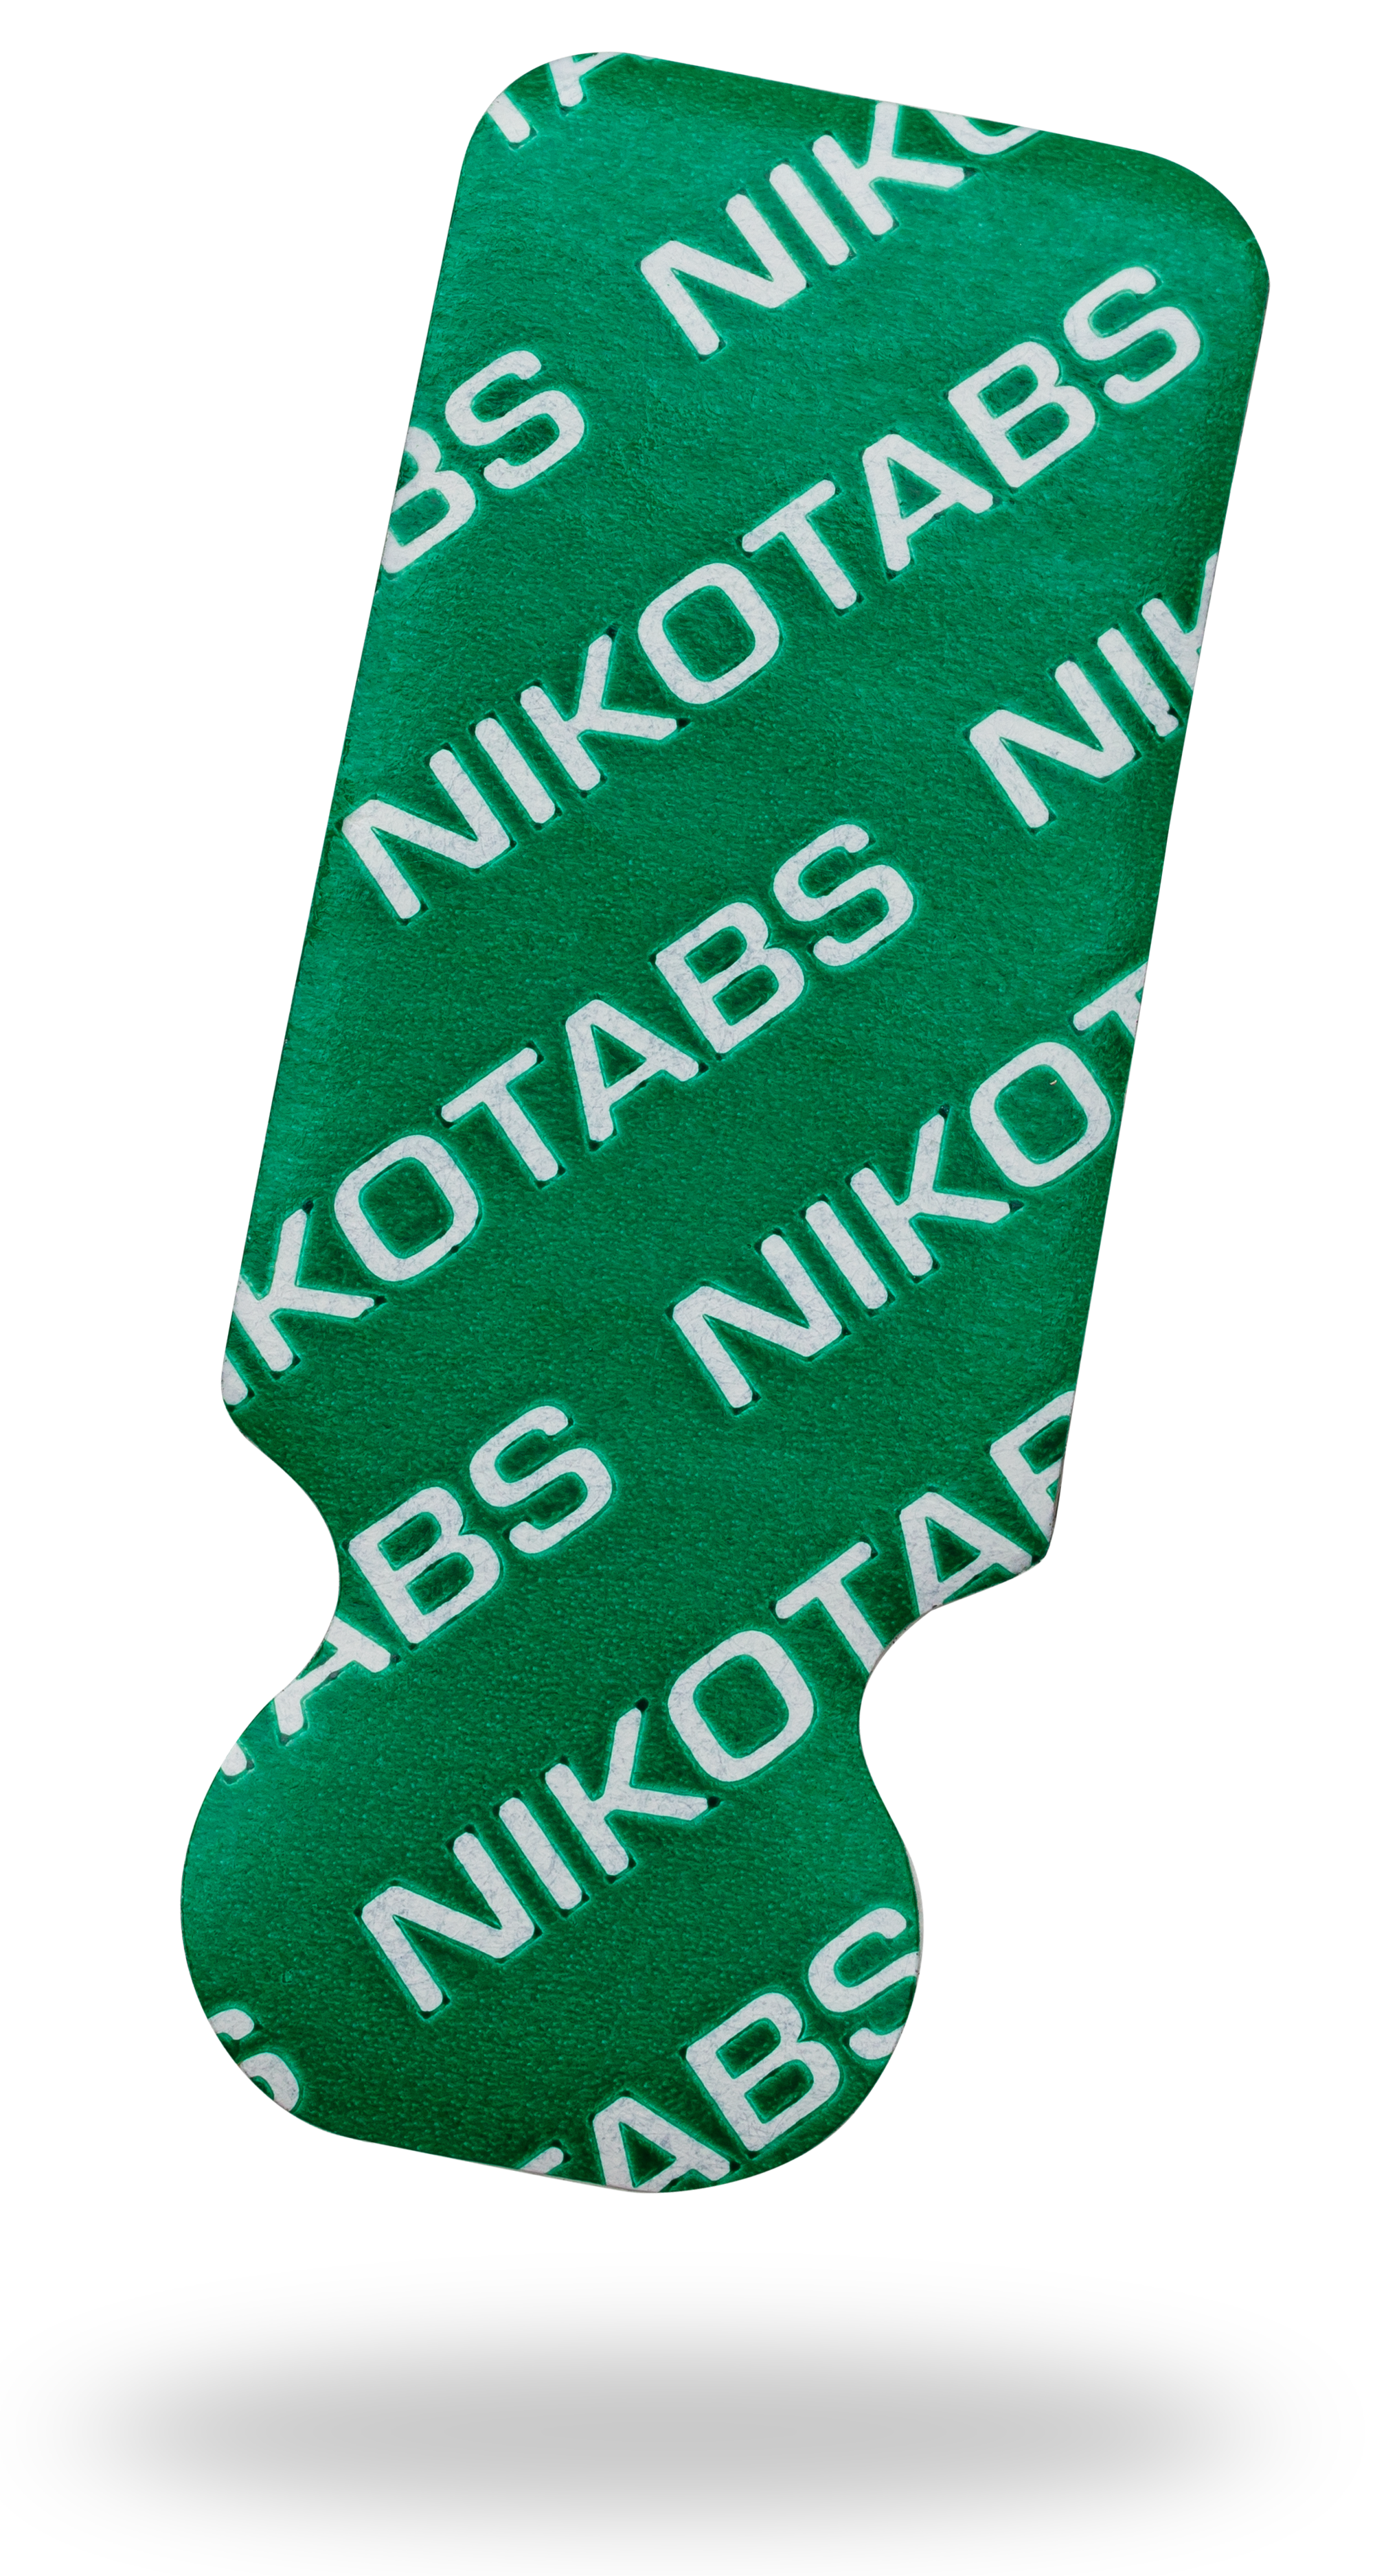 Nikotab No. 0815